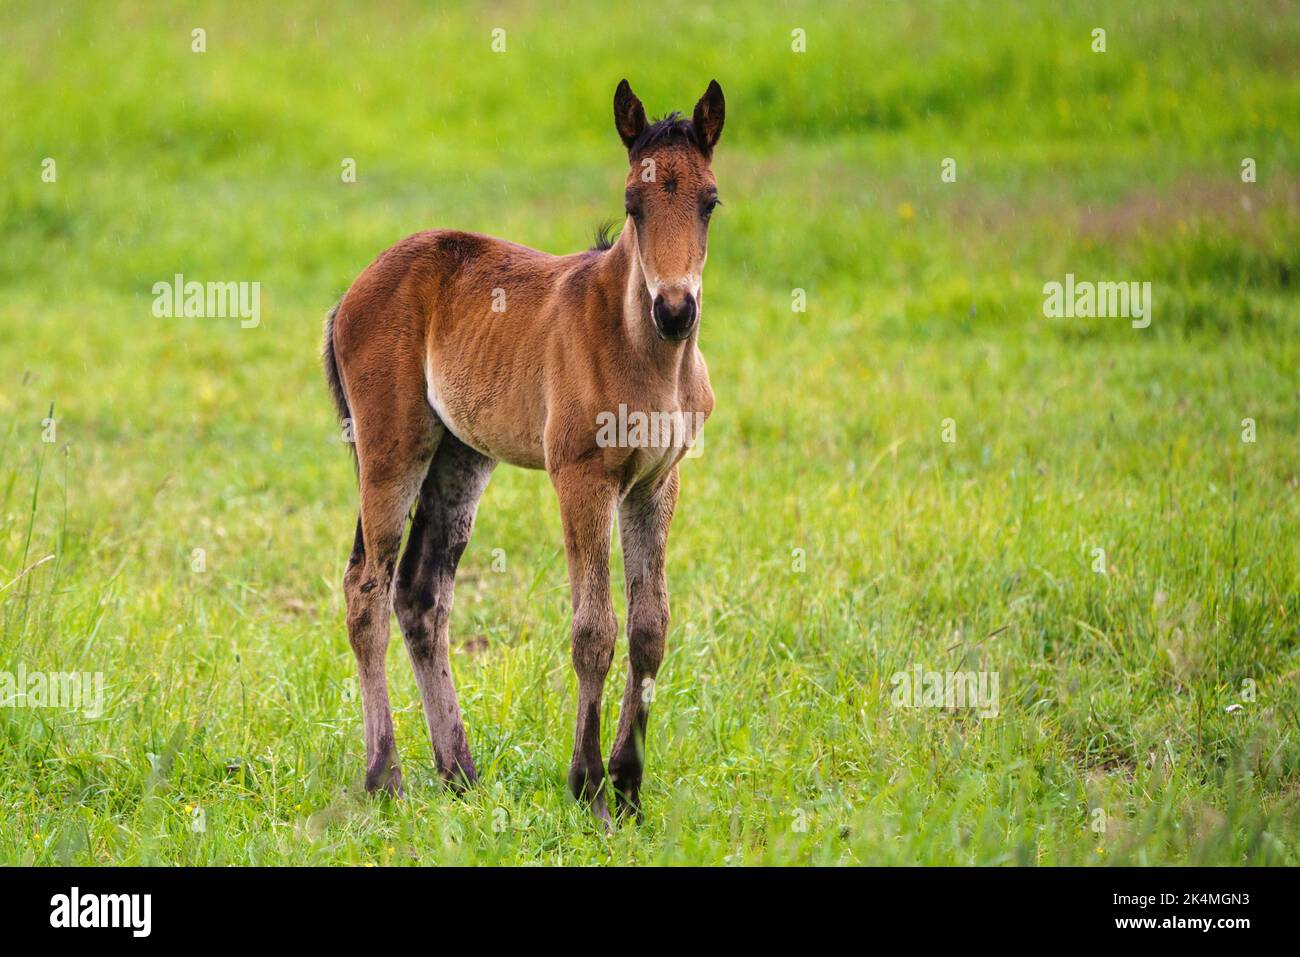 Swedish warmblood foal on a meadow, Norrbotten province, Sweden. Stock Photo